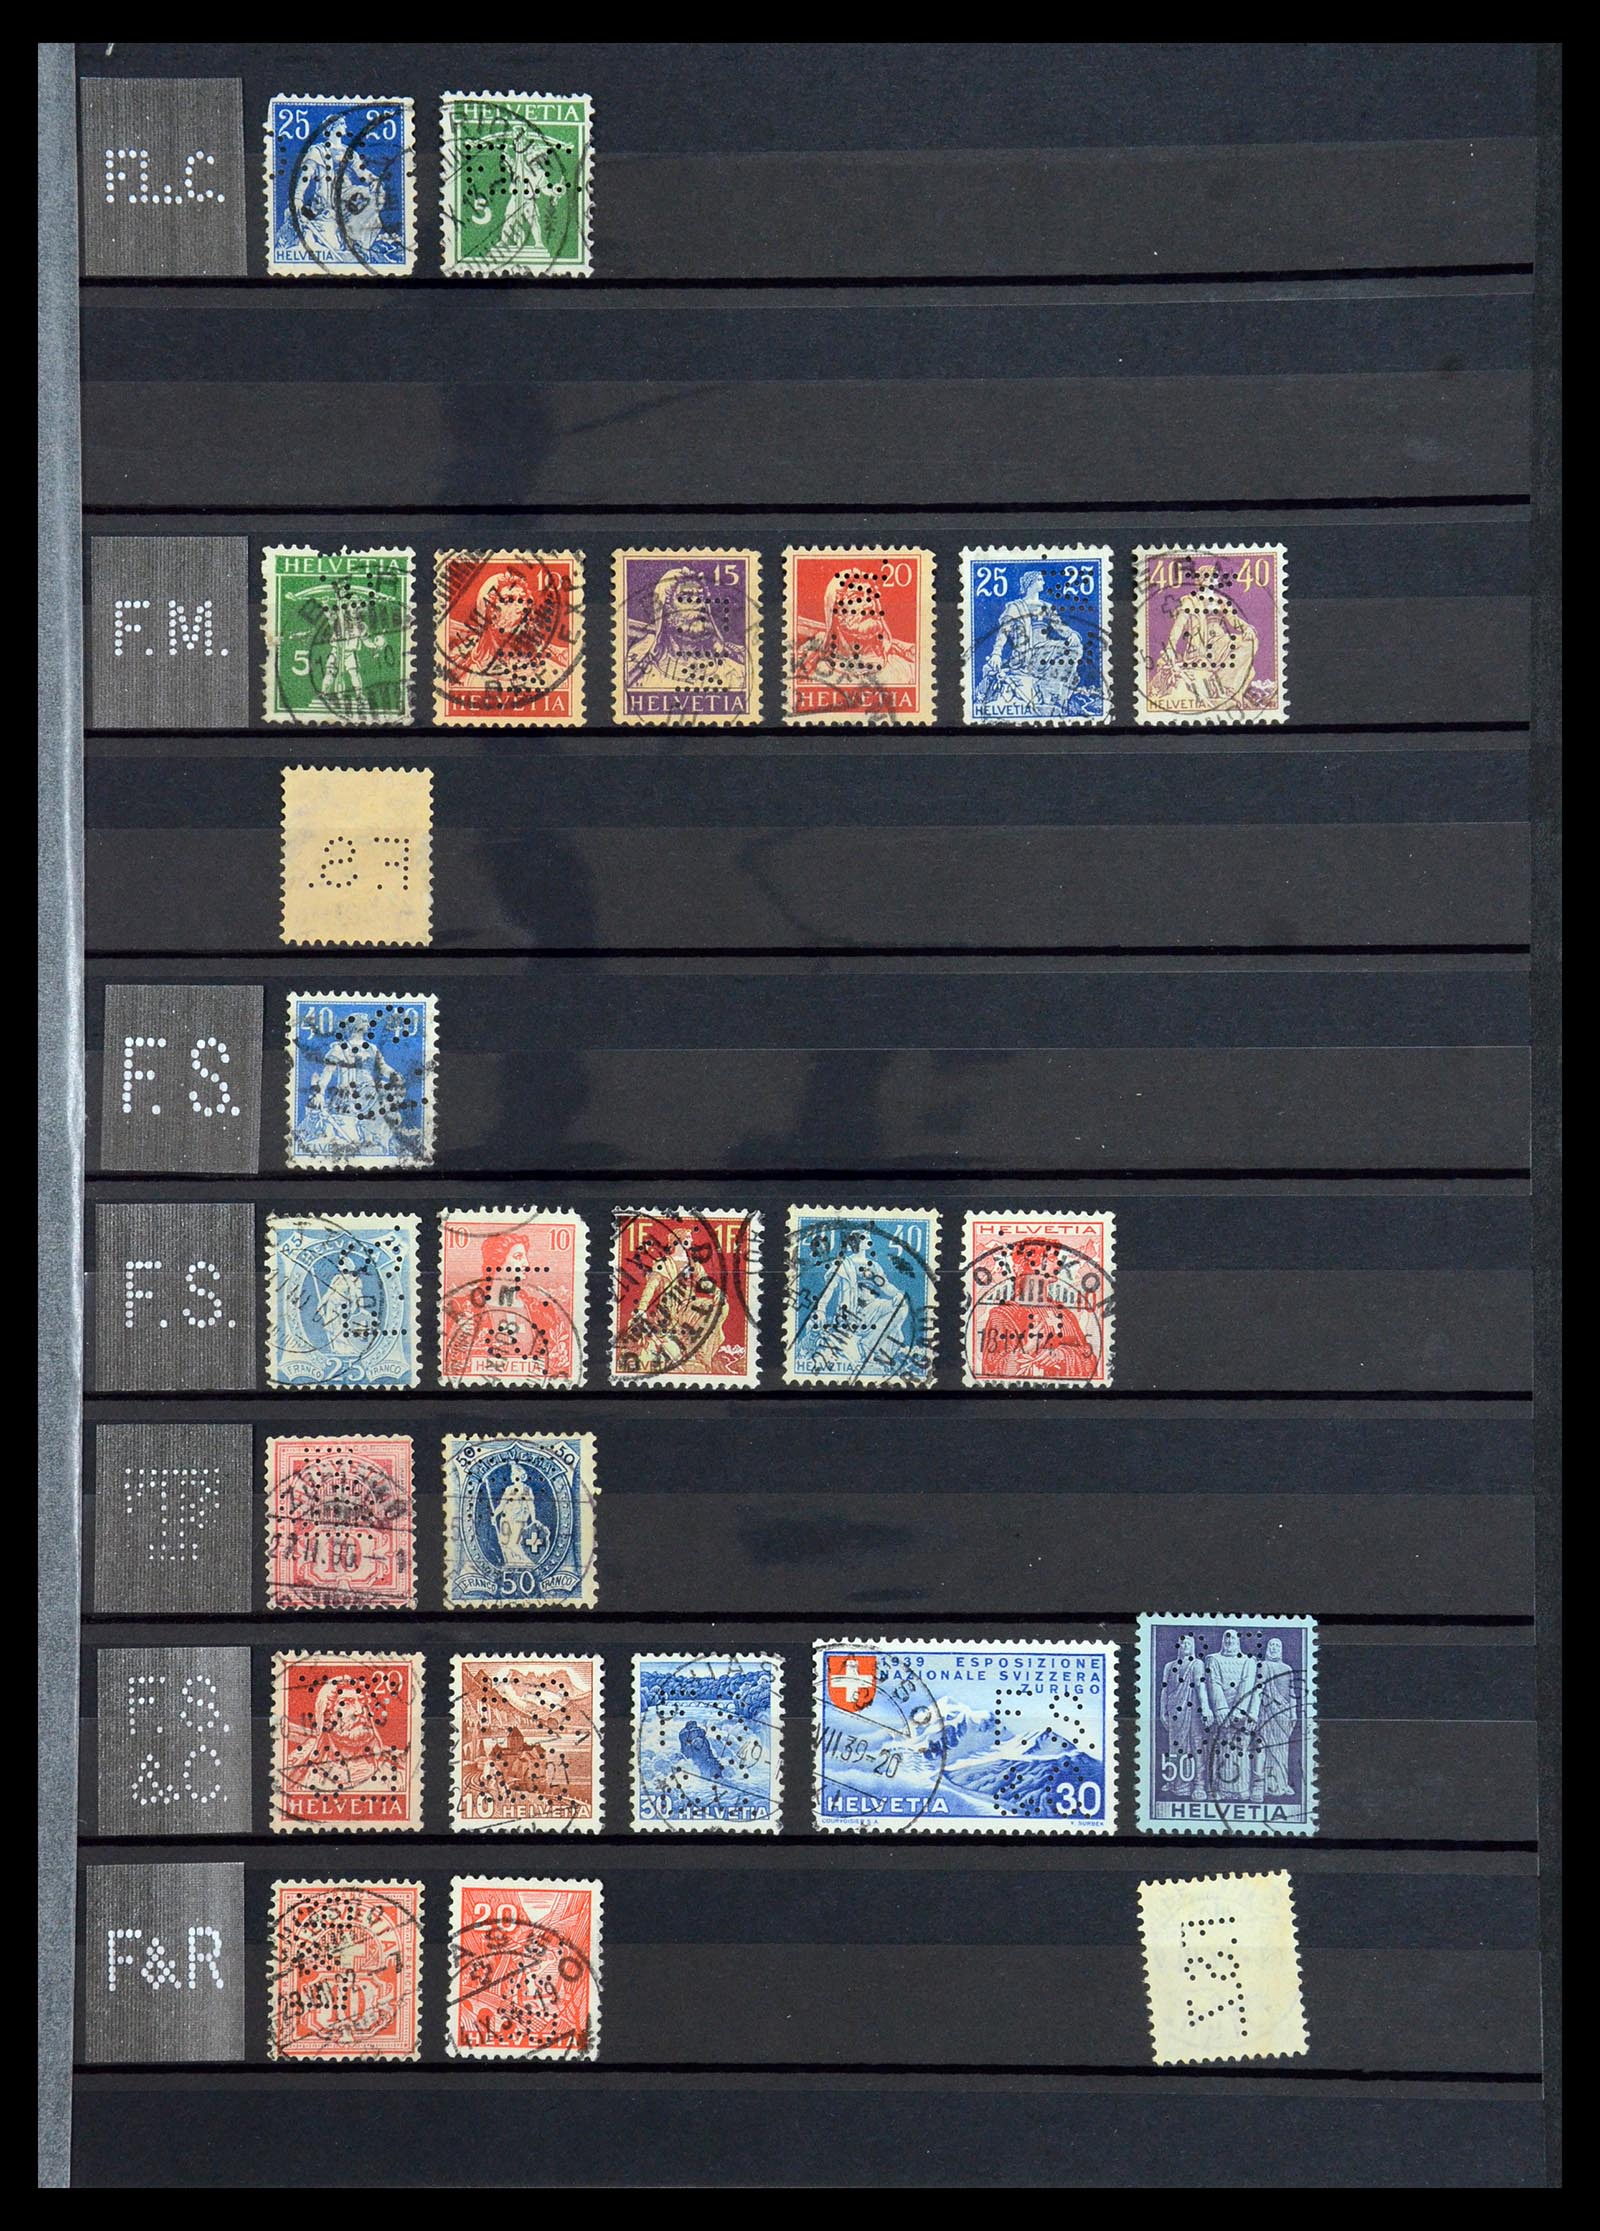 36372 019 - Stamp collection 36372 Switzerland perfins 1880-1960.